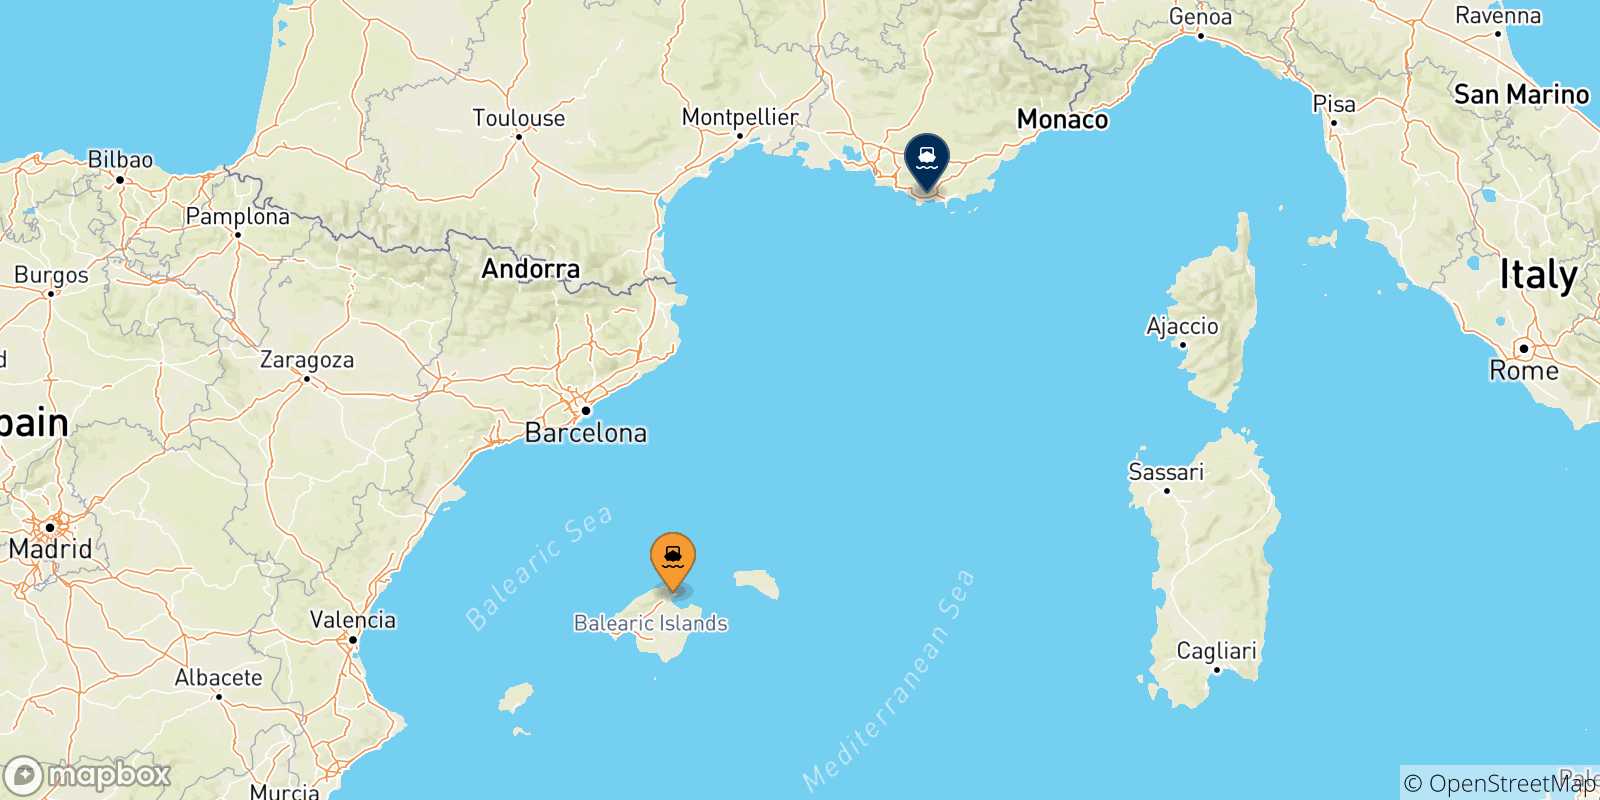 Mappa delle possibili rotte tra le Isole Baleari e Tolone